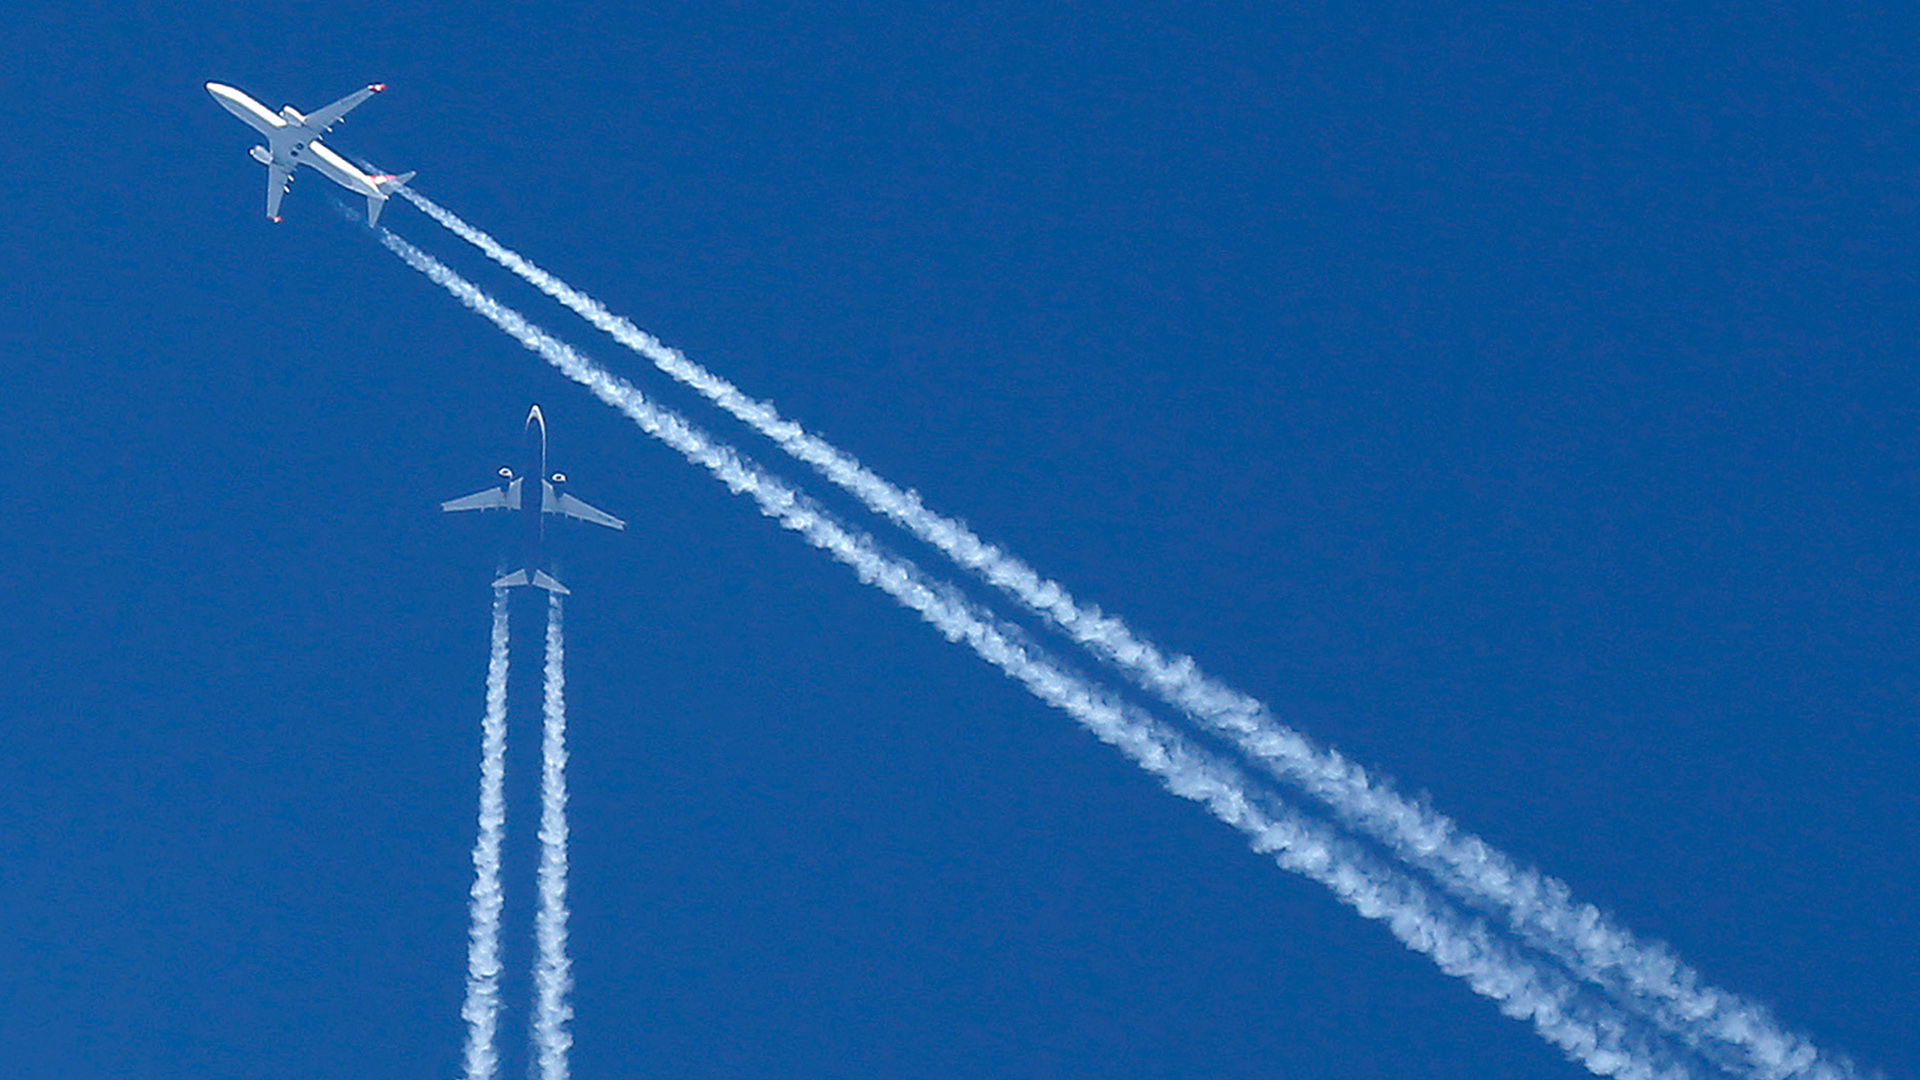 Die Wege zweier Flugzeuge kreuzen sich am Himmel. | picture alliance / Ina Fassbende